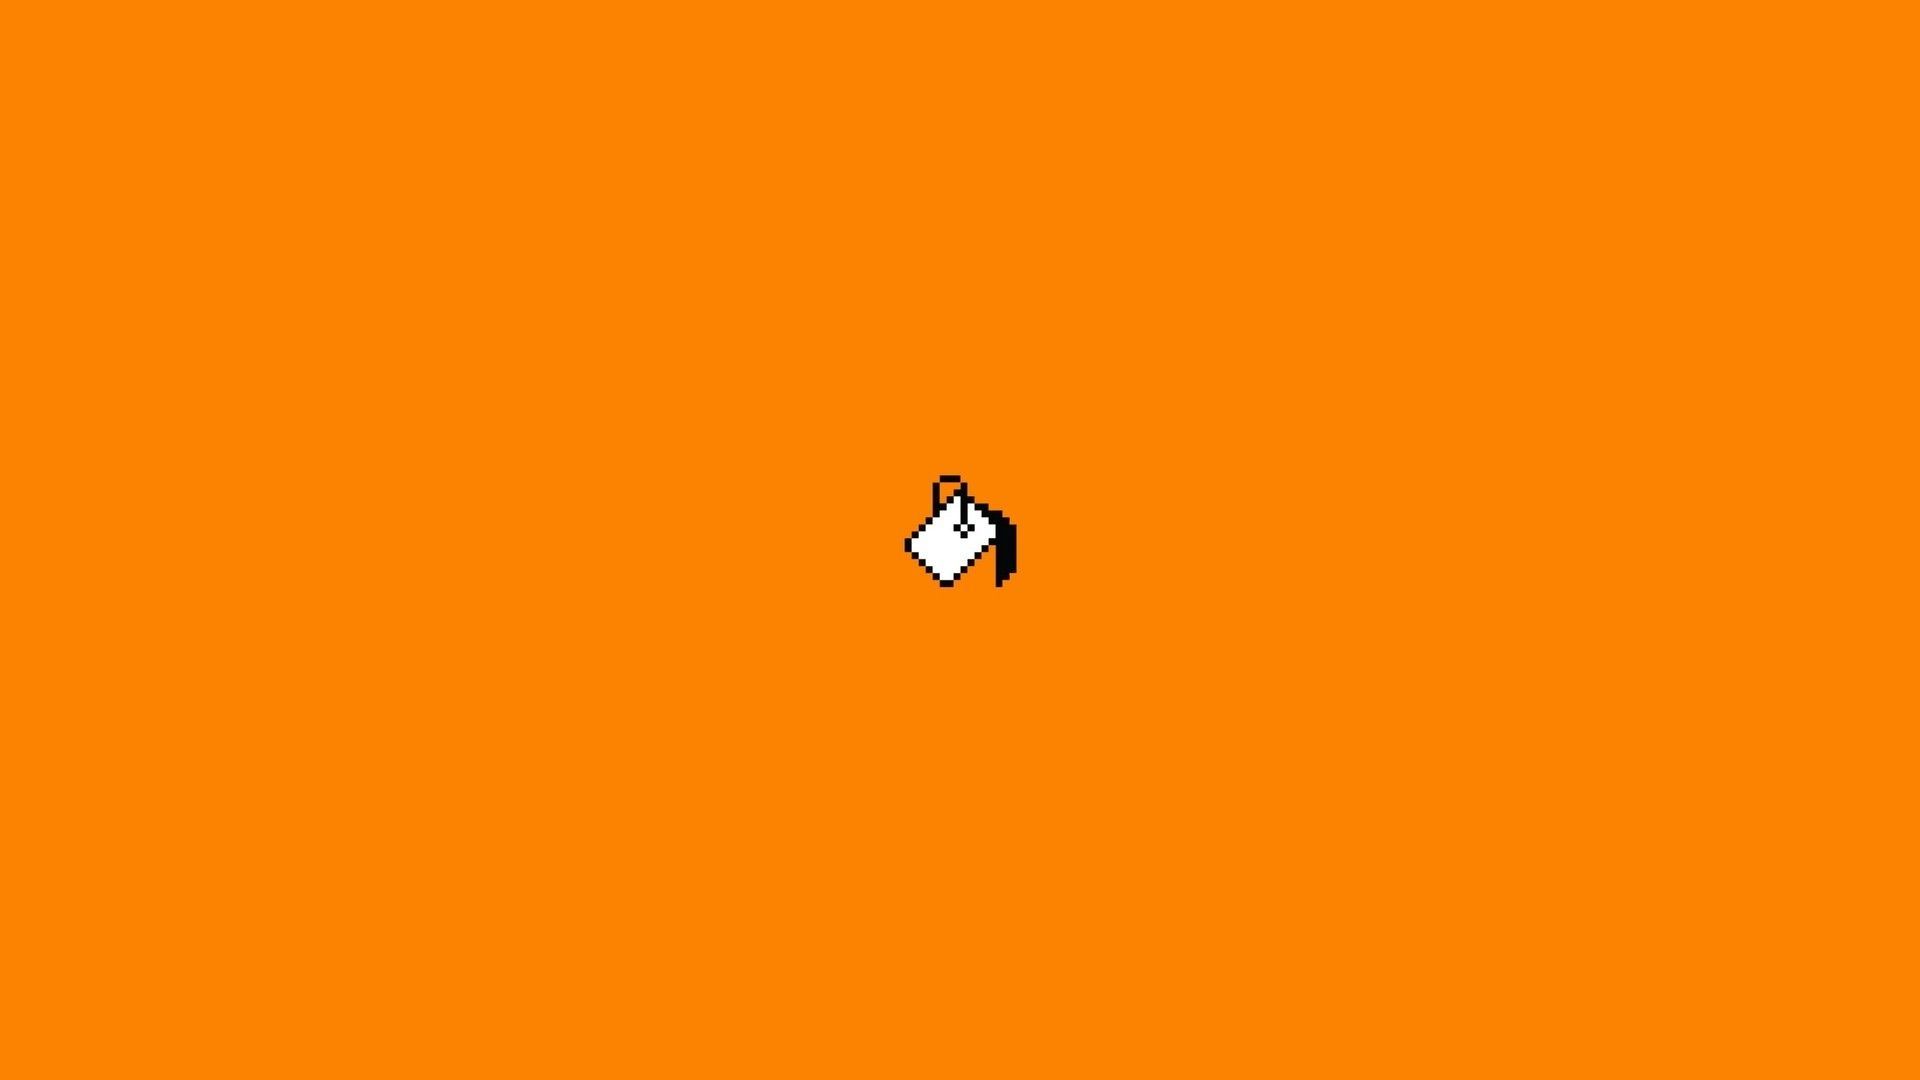 Hình nền máy tính màu cam thẩm mỹ trên WallpaperDog: Hãy khám phá bộ sưu tập những hình nền máy tính màu cam đẹp nhất trên trang WallpaperDog. Bạn sẽ được trải nghiệm những hình nền màu sắc hài hòa, tạo cảm giác thanh lịch và tinh tế cho máy tính của mình.